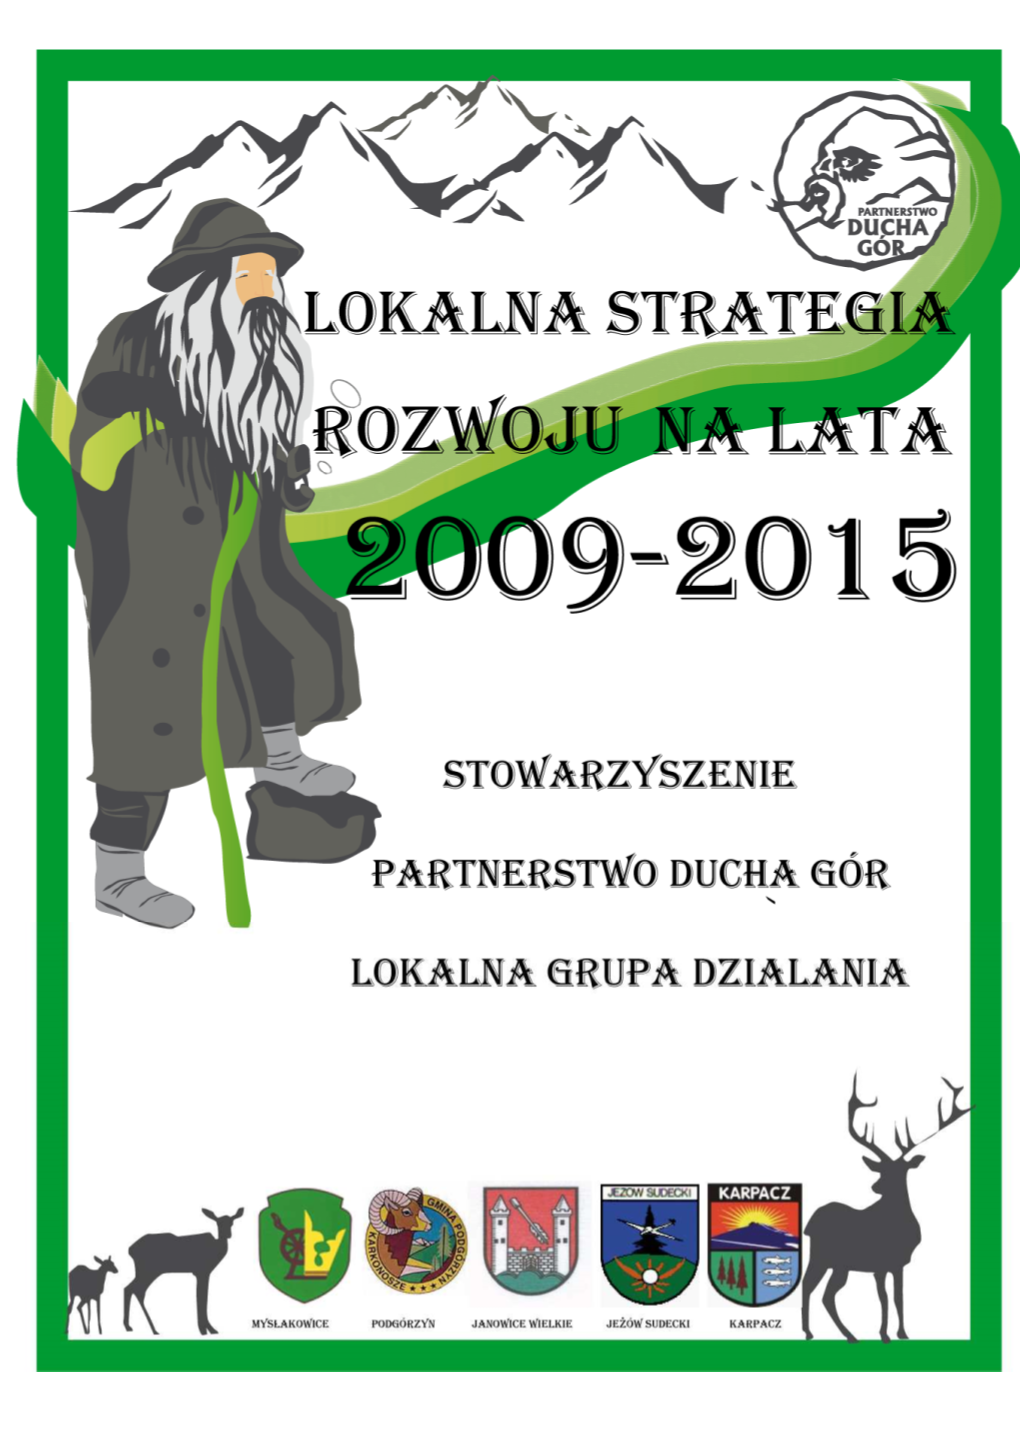 Lokalna Strategia Rozwoju – Partnerstwo Ducha Gór 2009-2013